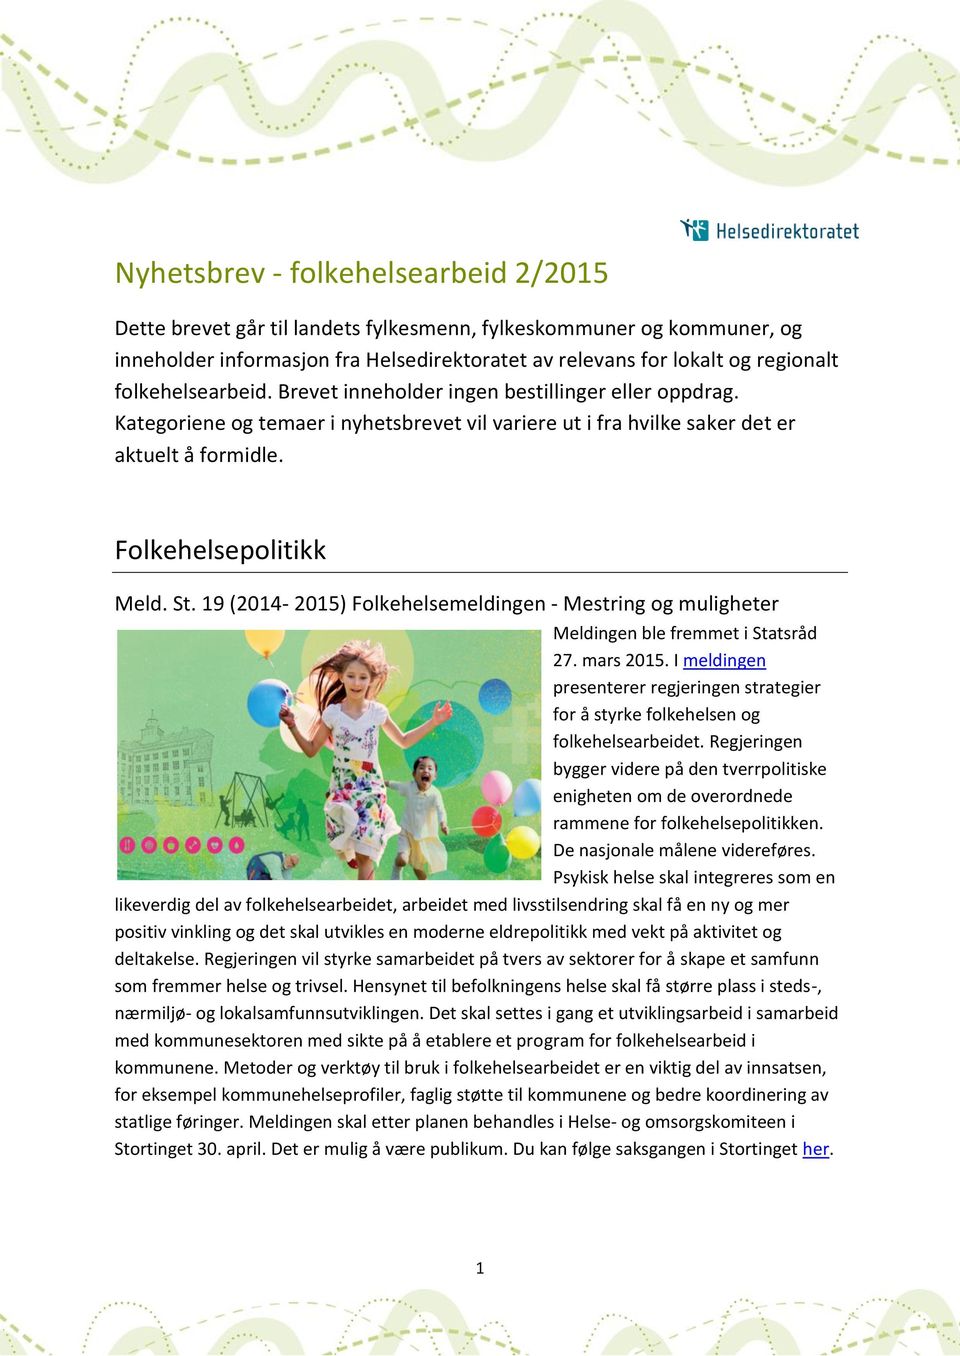 19 (2014-2015) Folkehelsemeldingen - Mestring og muligheter Meldingen ble fremmet i Statsråd 27. mars 2015.